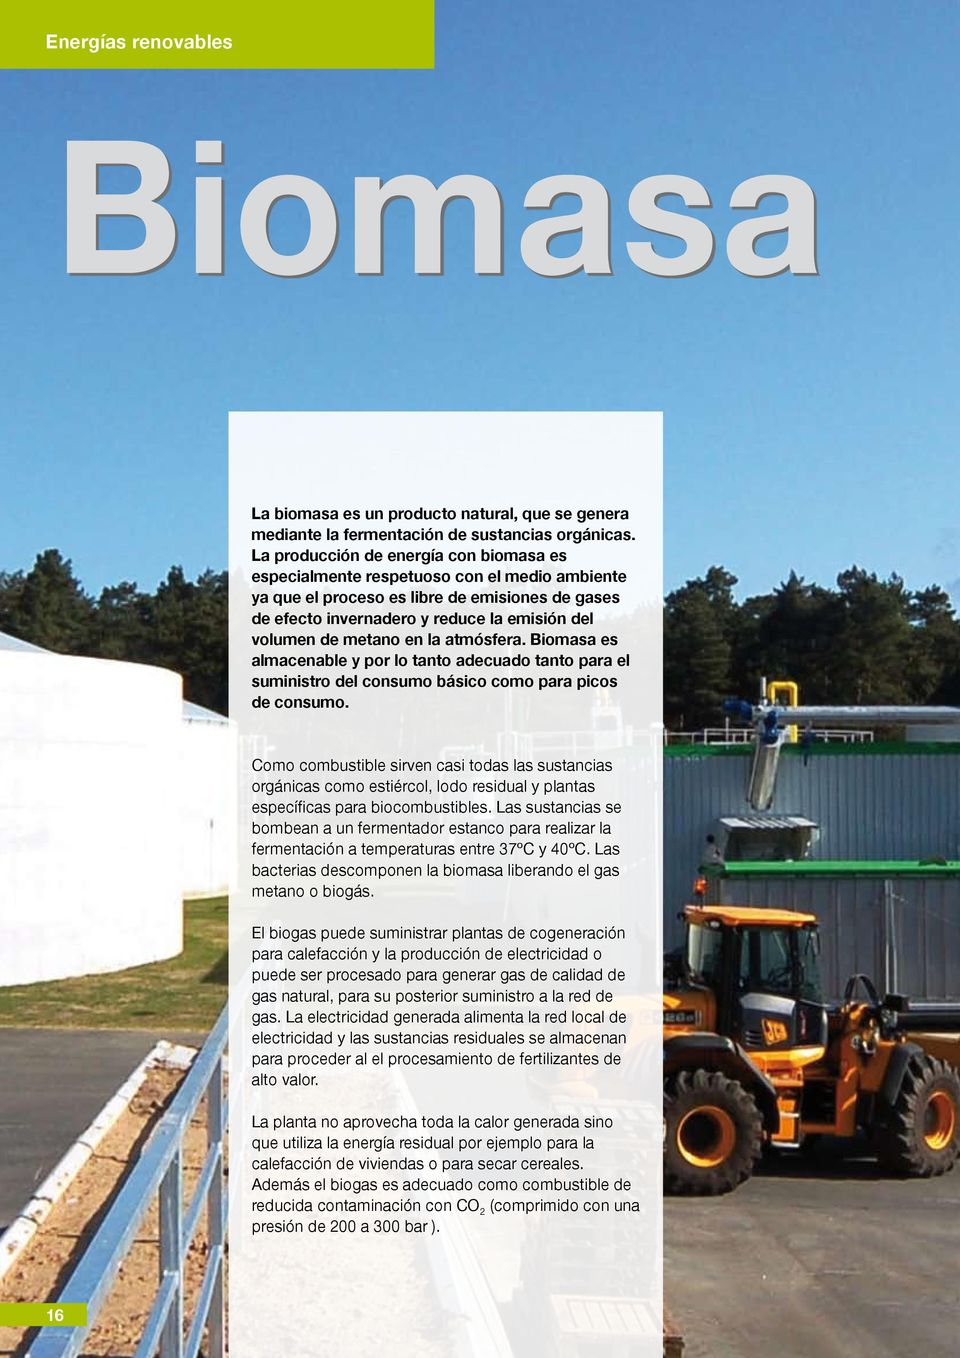 en la atmósfera. Biomasa es almacenable y por lo tanto adecuado tanto para el suministro del consumo básico como para picos de consumo.